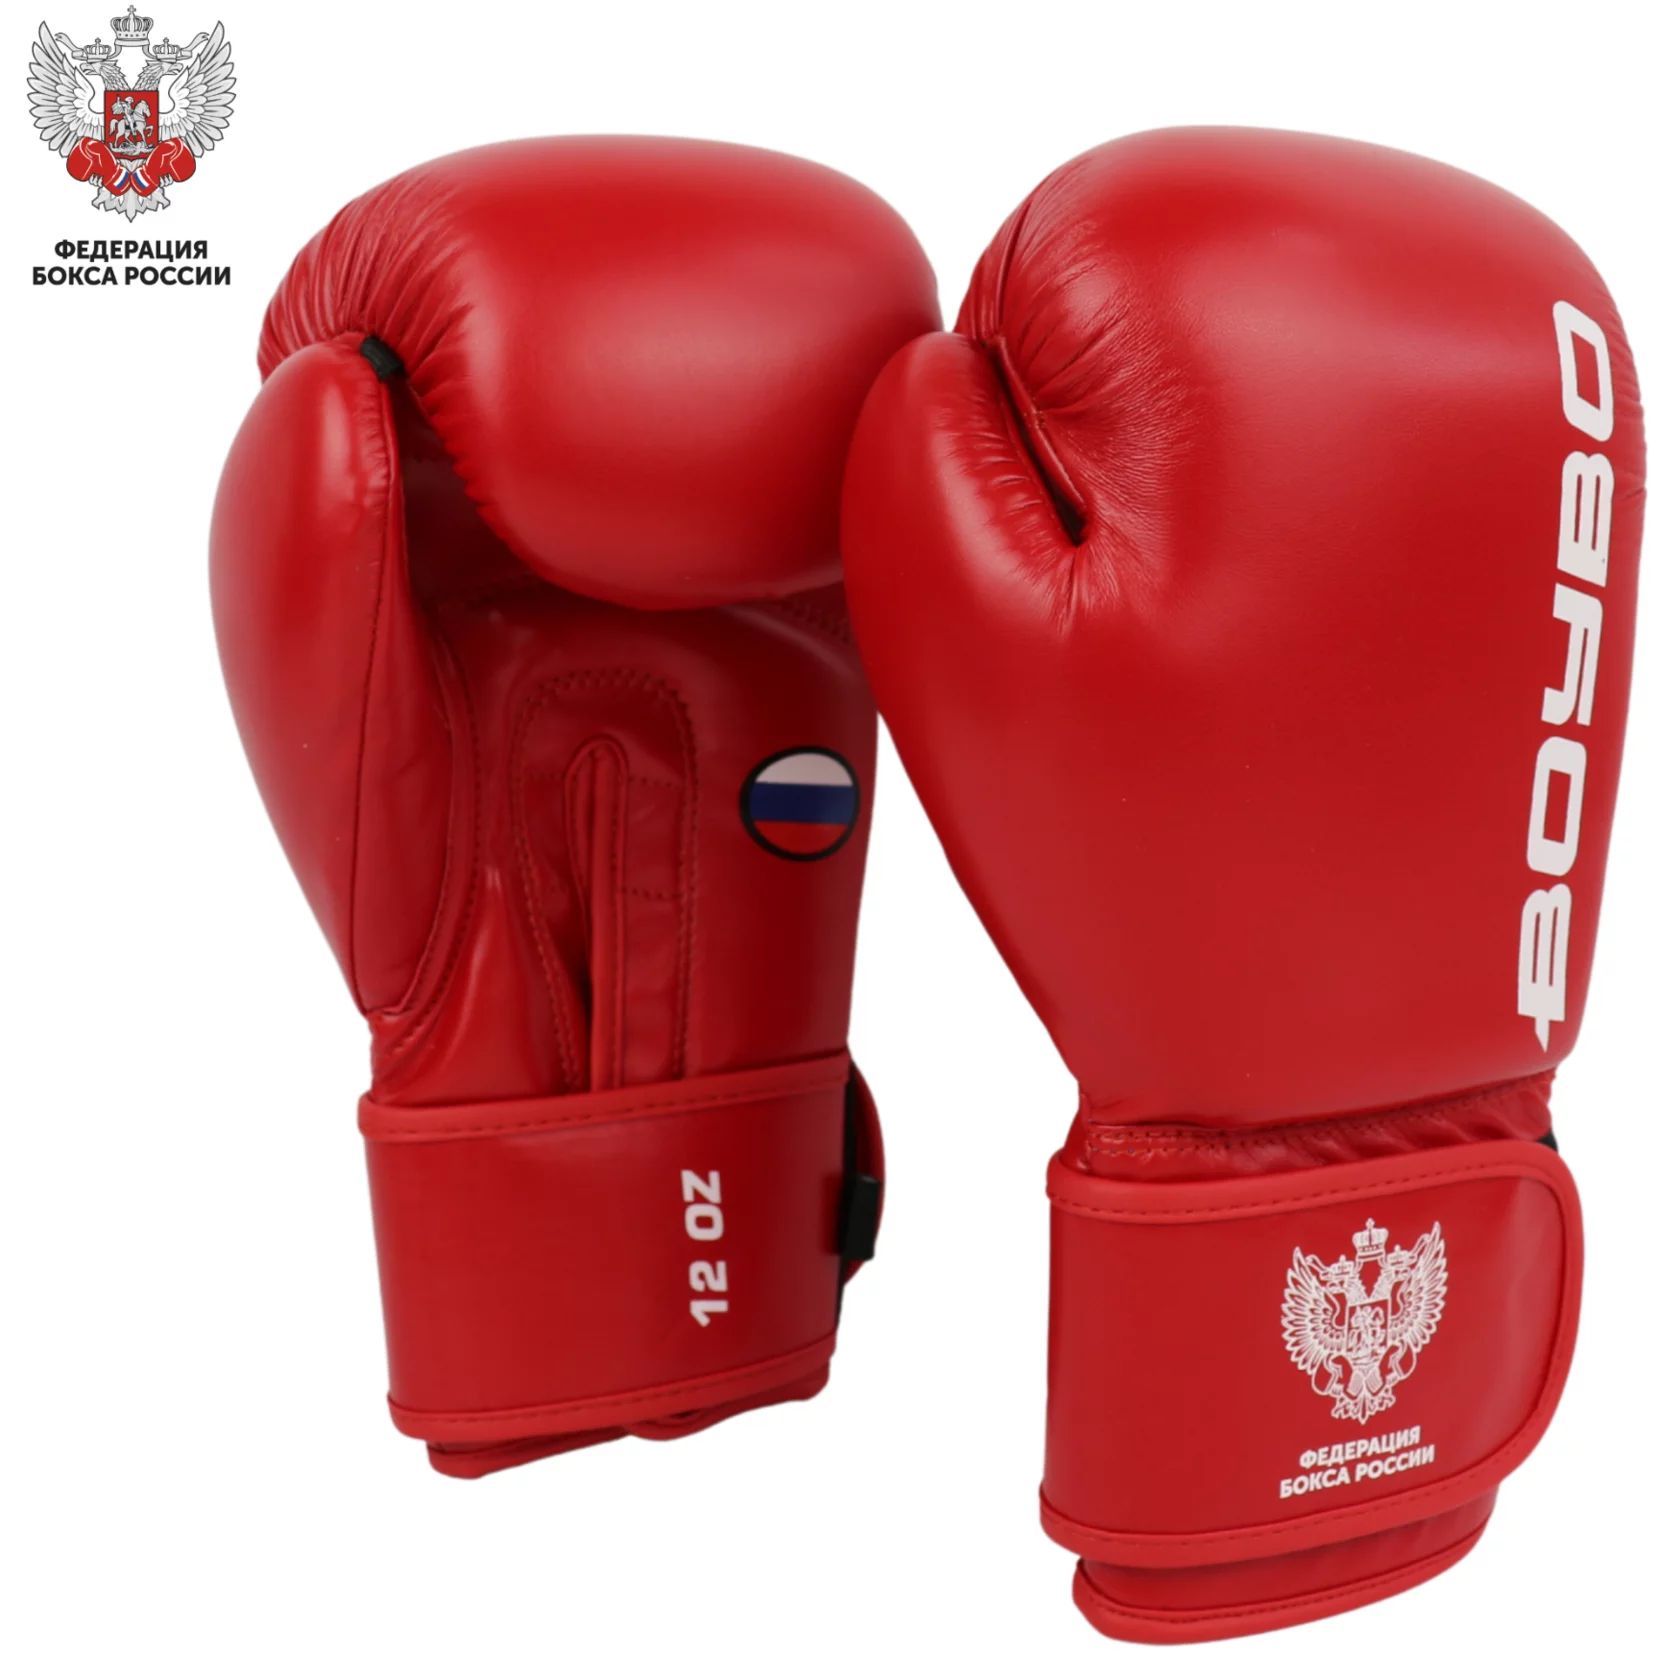 Перчатки боксерские BoyBo TITAN, IB-23-1, кожа одобрены ФБР,красные 10 oz